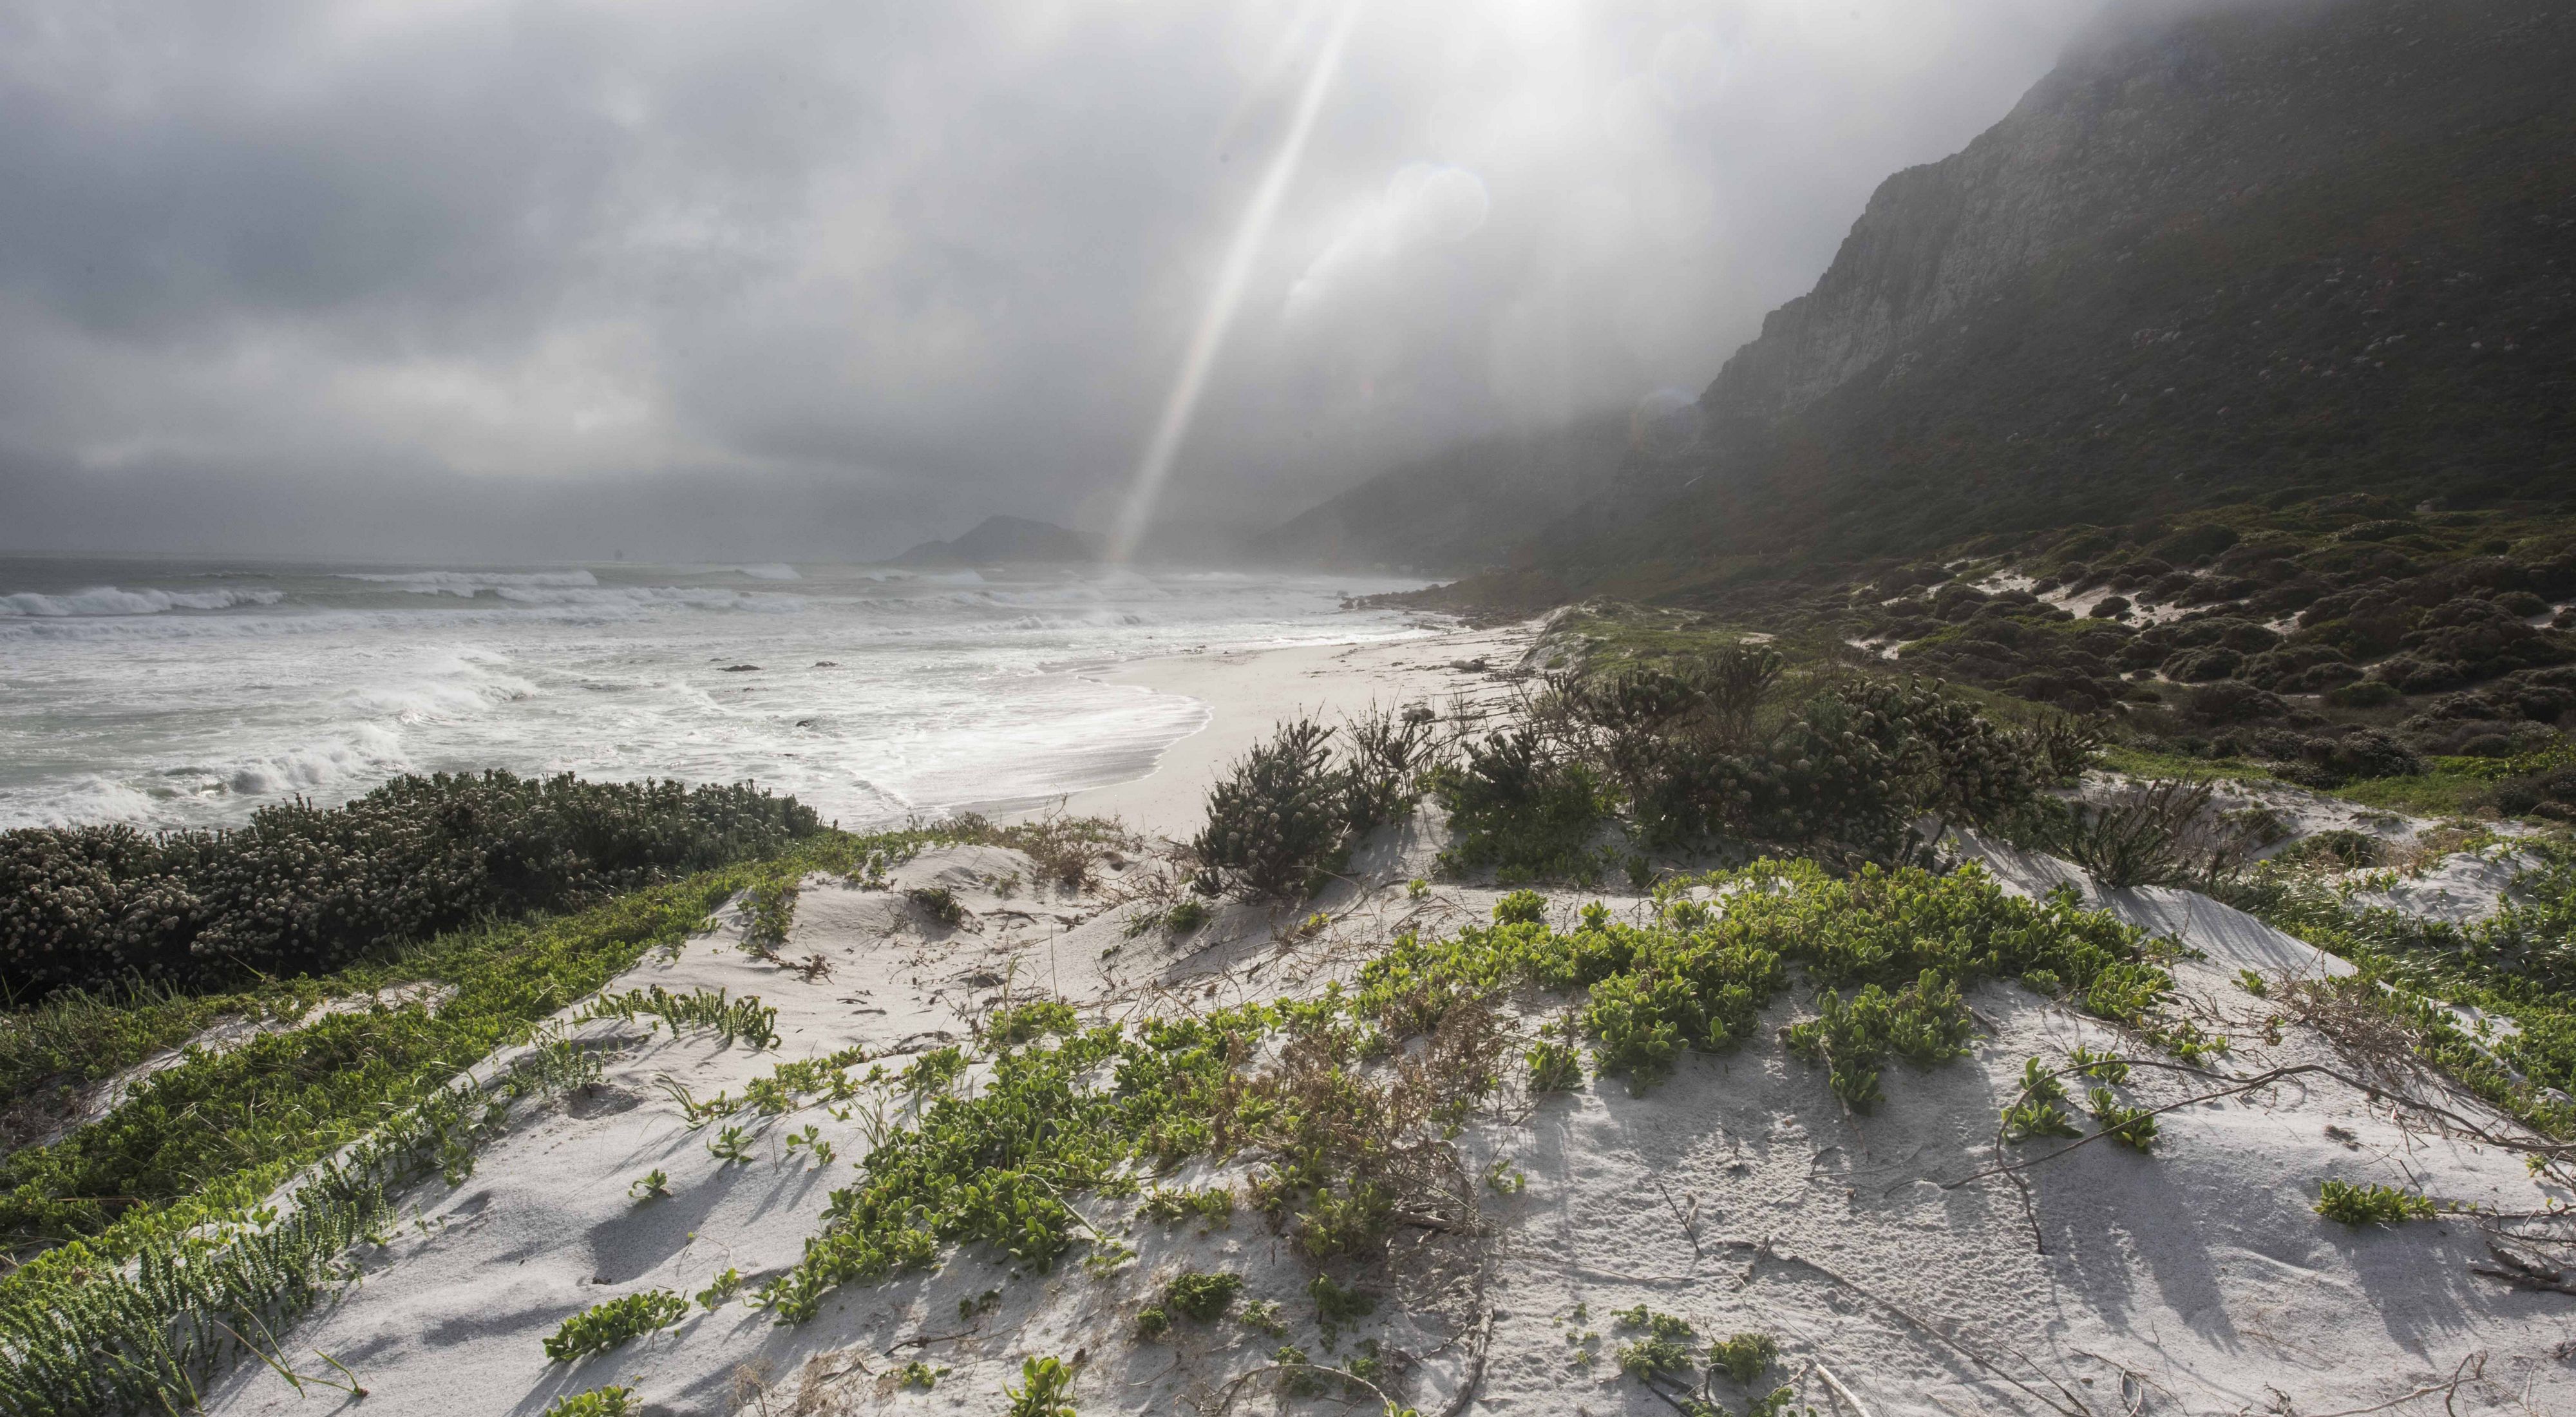 A beach near Cape Town, South Africa 